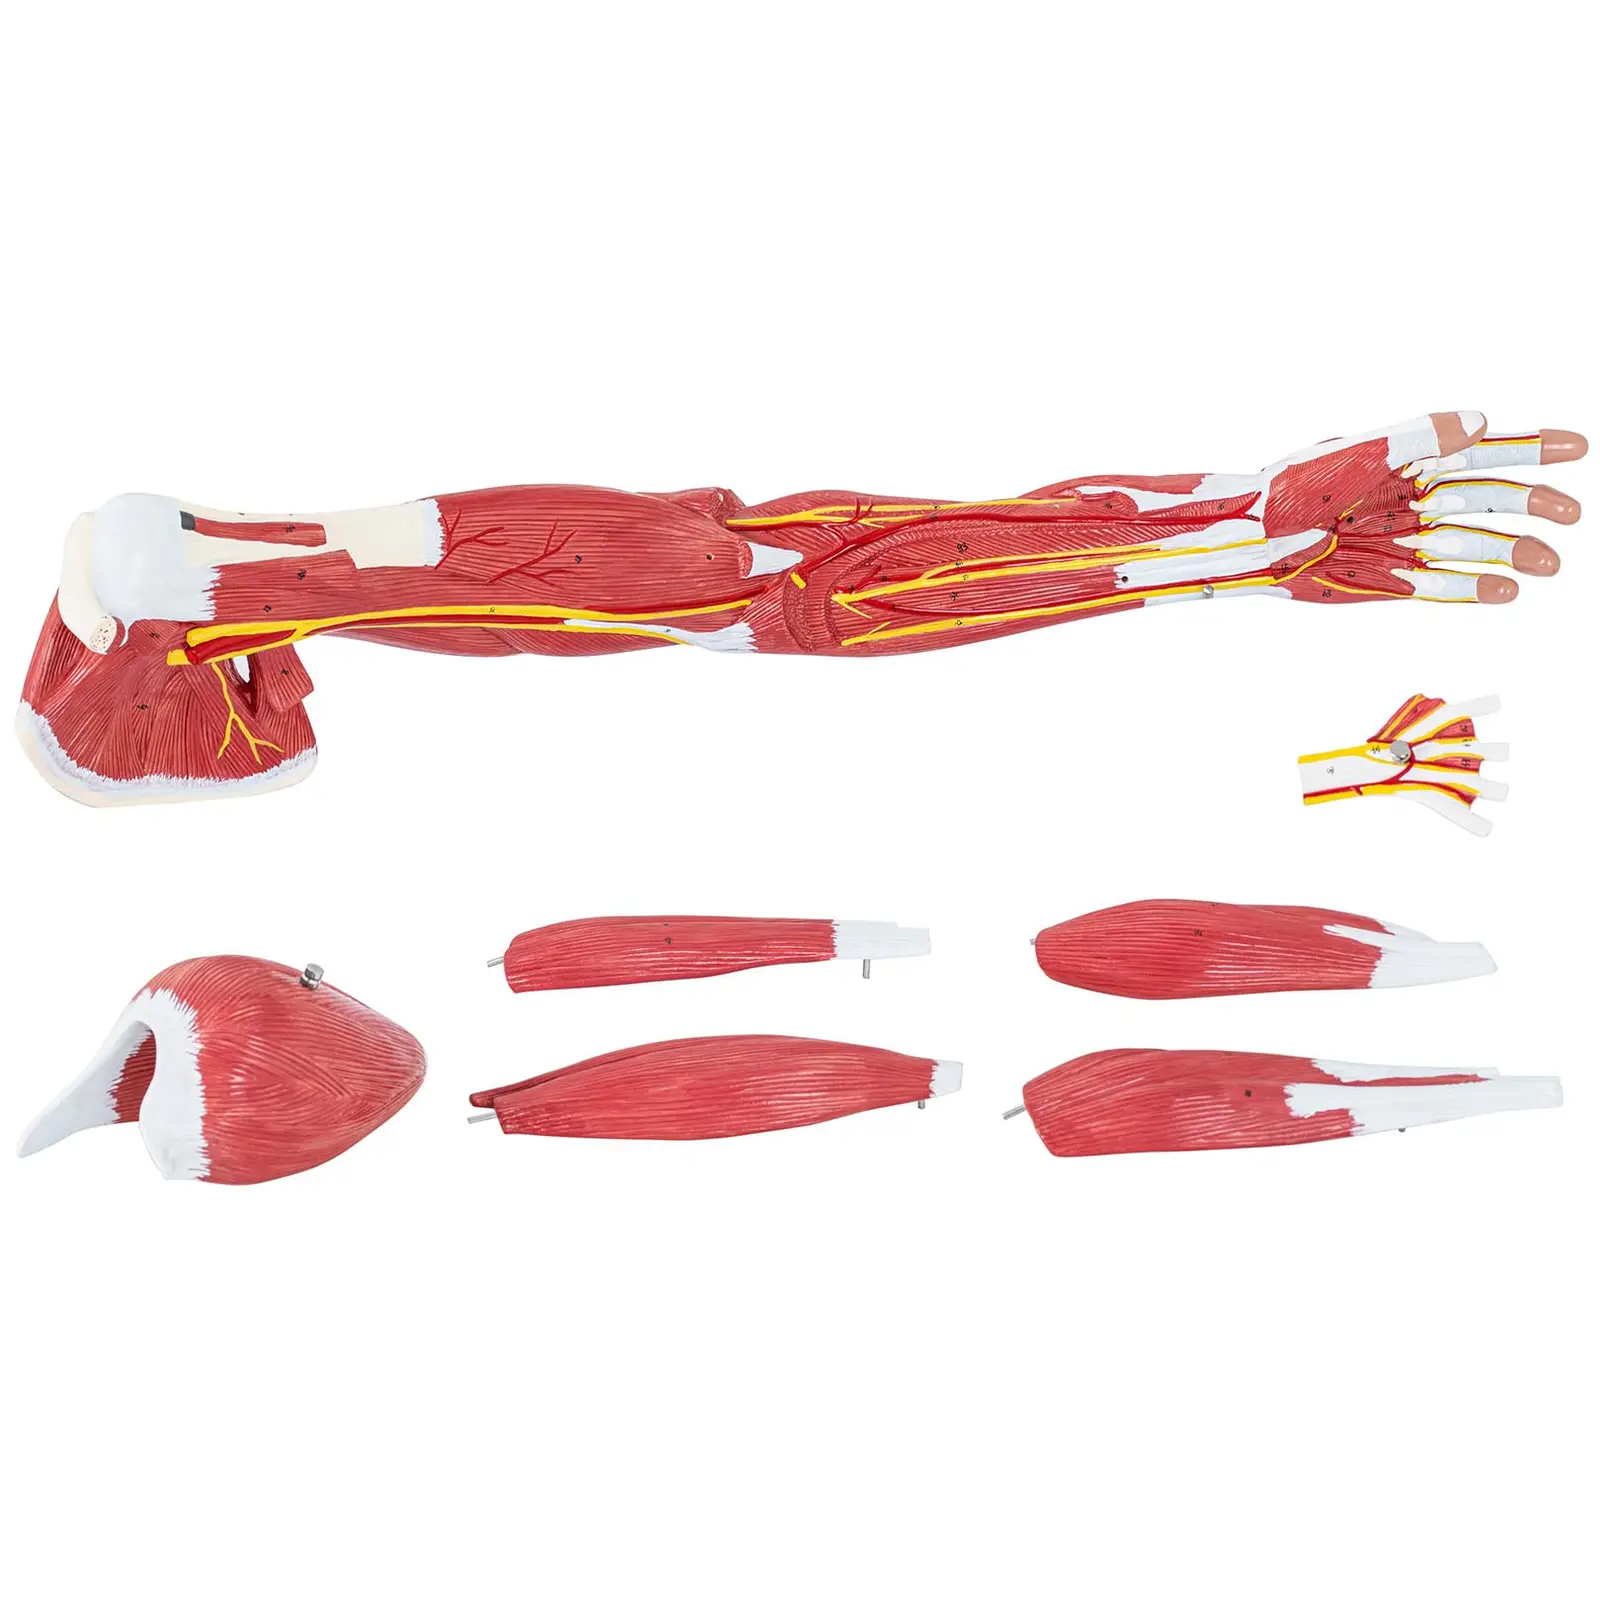 Braço - modelo anatómico